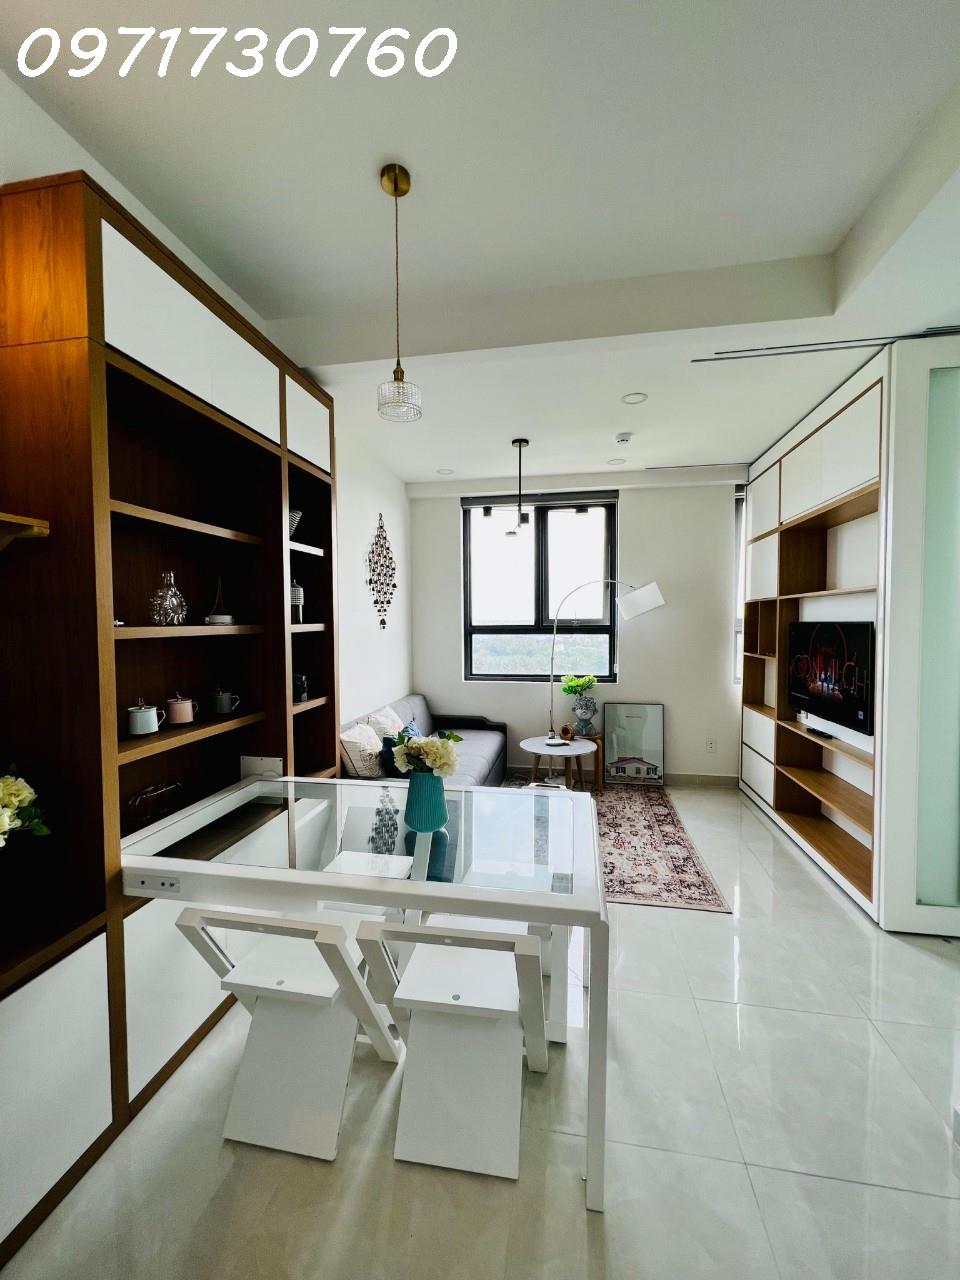 Cho thuê chung cư giá rẻ: q8, Bình Chánh, Thành Phố Hồ Chí Minh